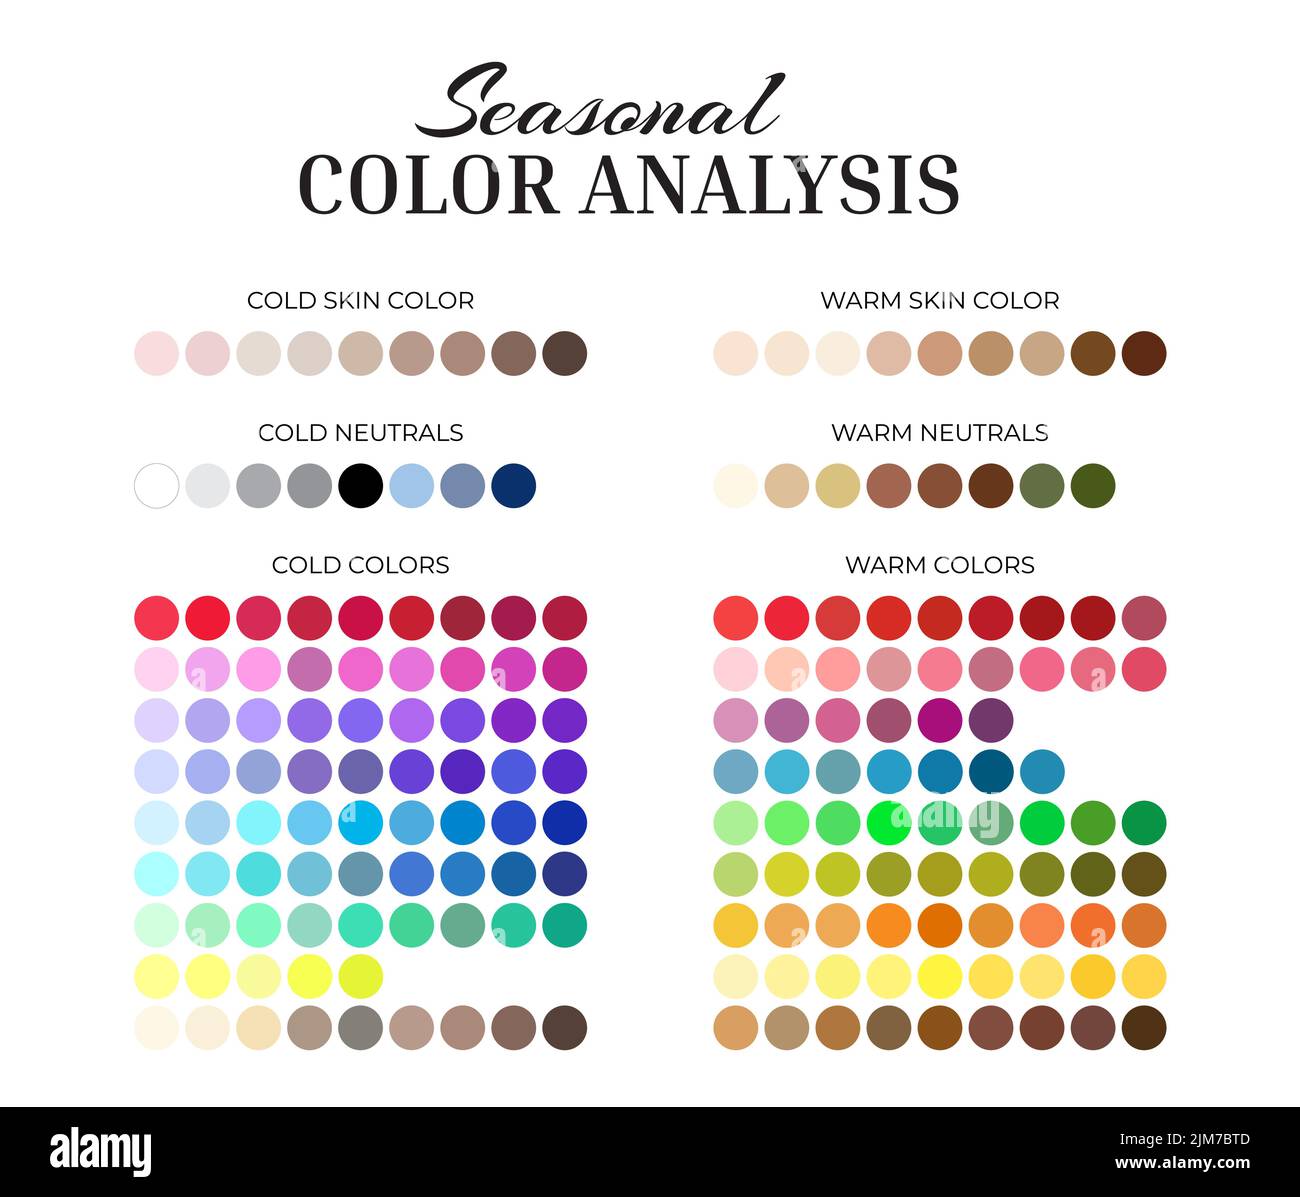 Tavolozza stagionale per l'analisi del colore con campioni di colore caldi e freddi per ogni colore, neutrali, tonalità della pelle Illustrazione Vettoriale